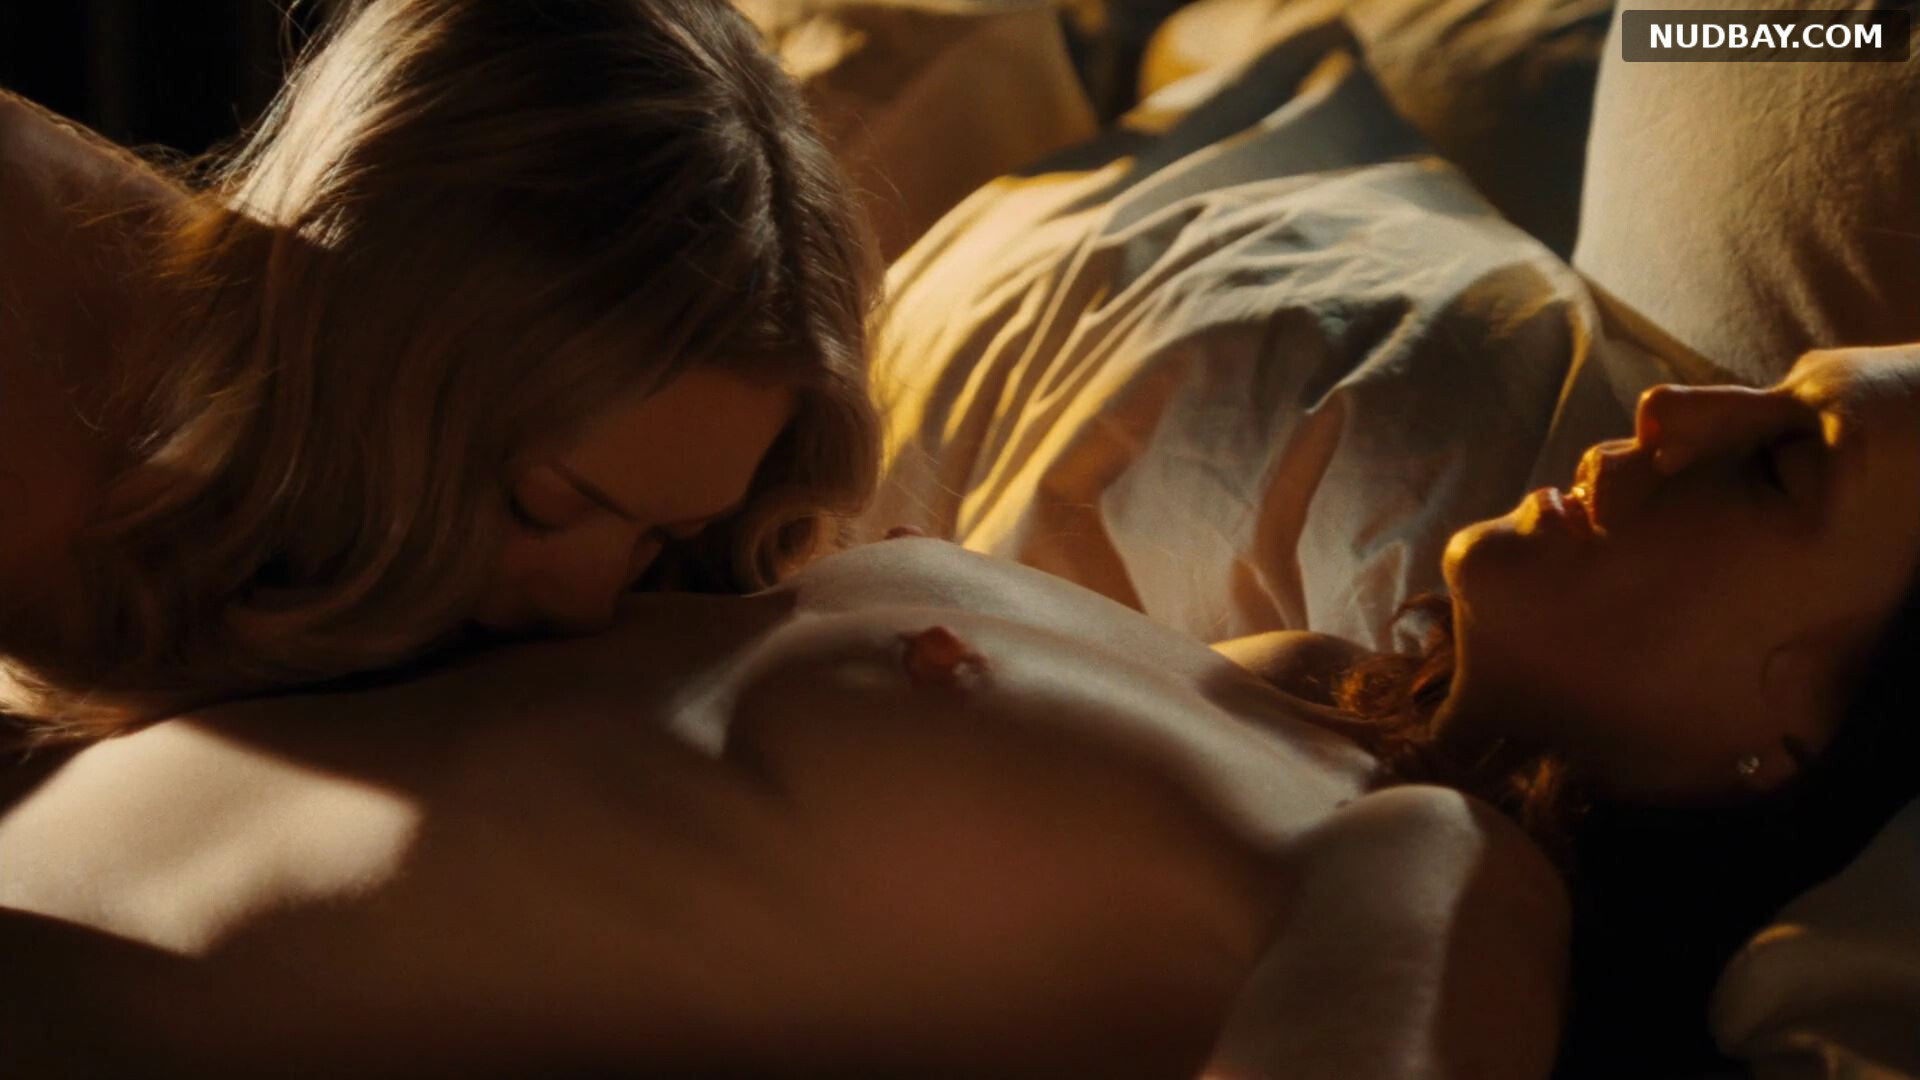 Julianne Moore $ Amanda Seyfried nude in Chloe (2009)